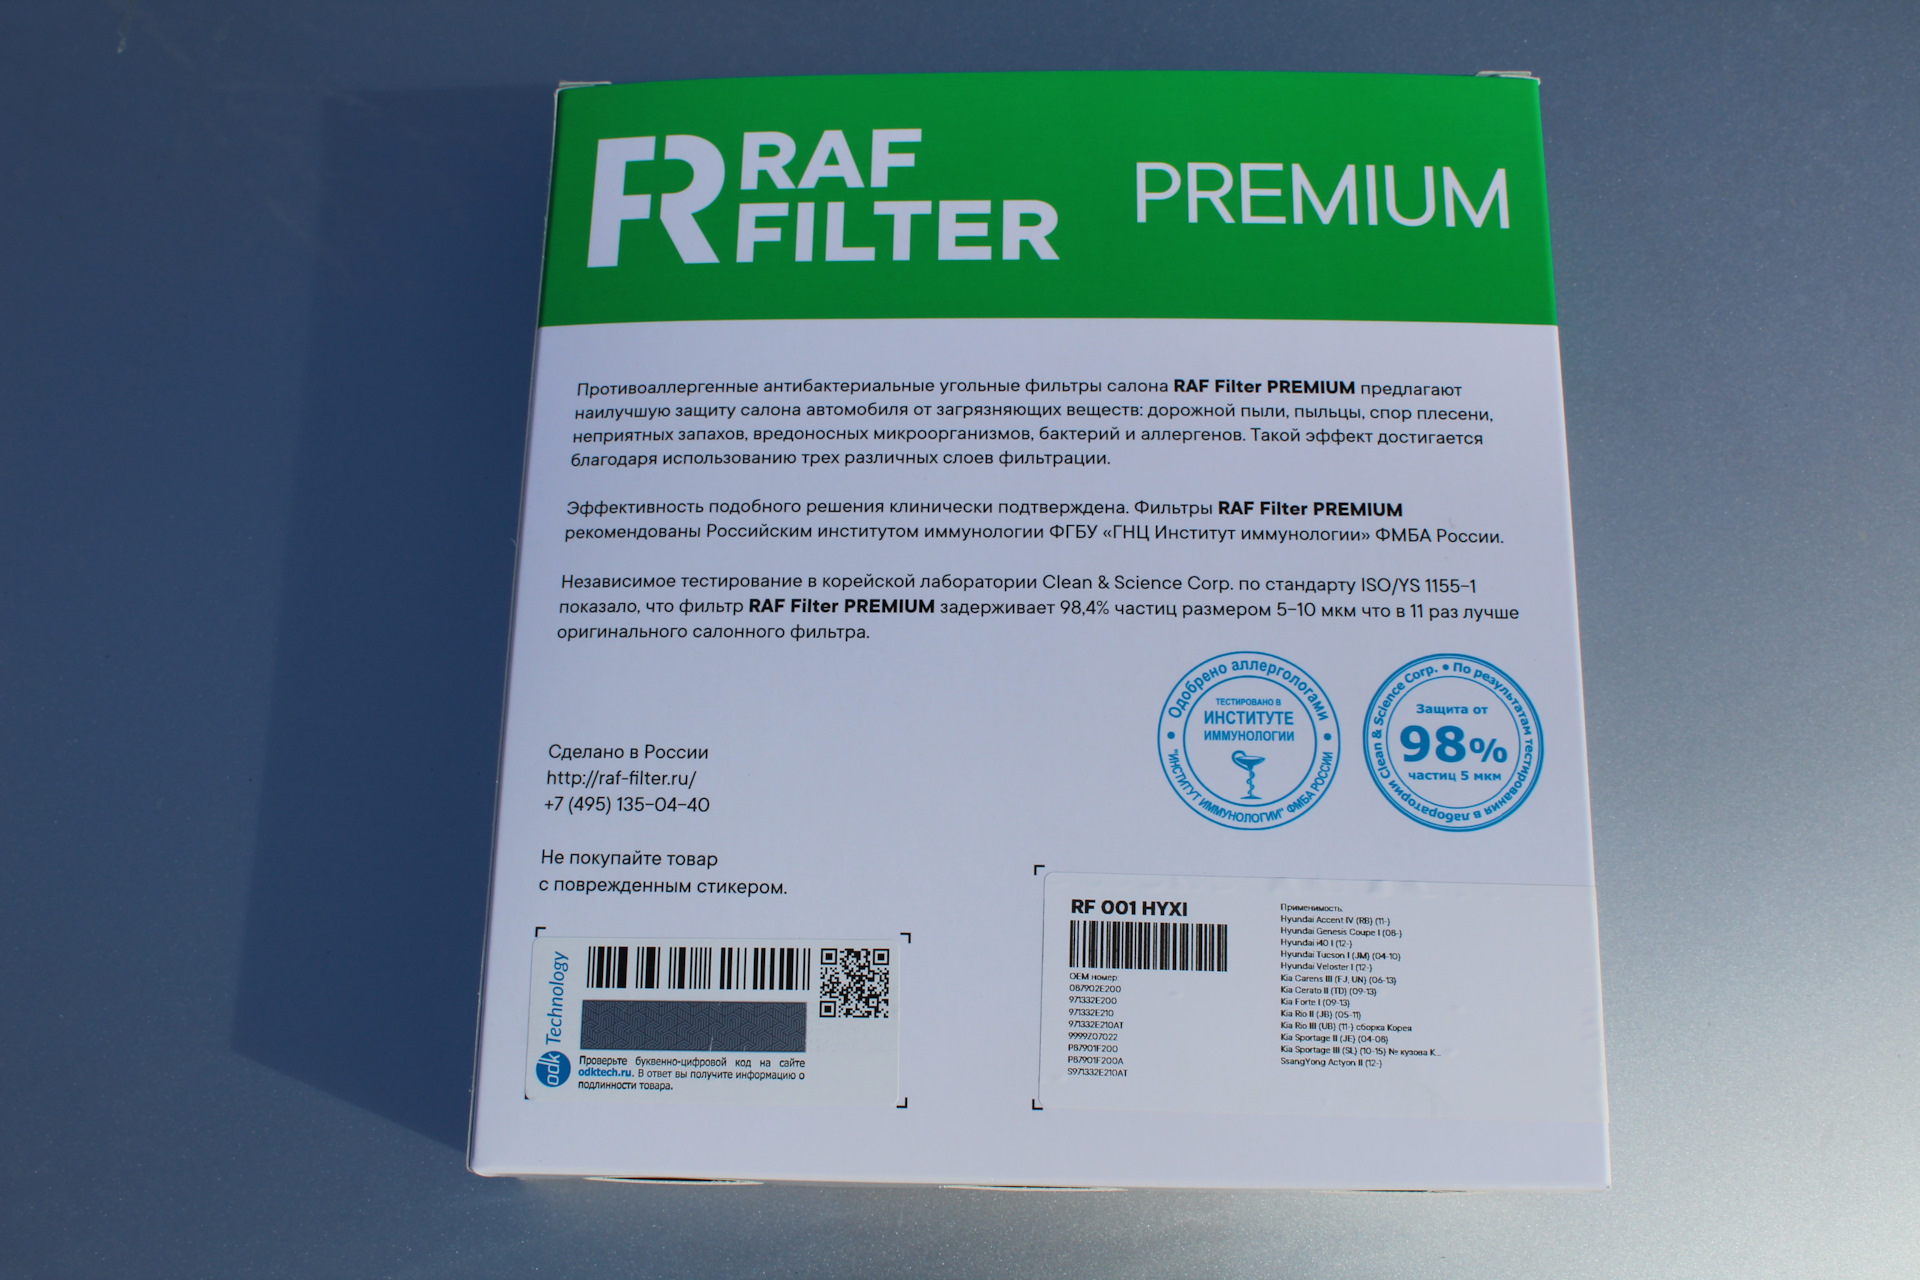 Проверить jbl на оригинальность по серийному номеру. Фильтр Raf Filter rf001hyxi. Фильтр Raf. Код подлинности на фильтре барьер где находится.